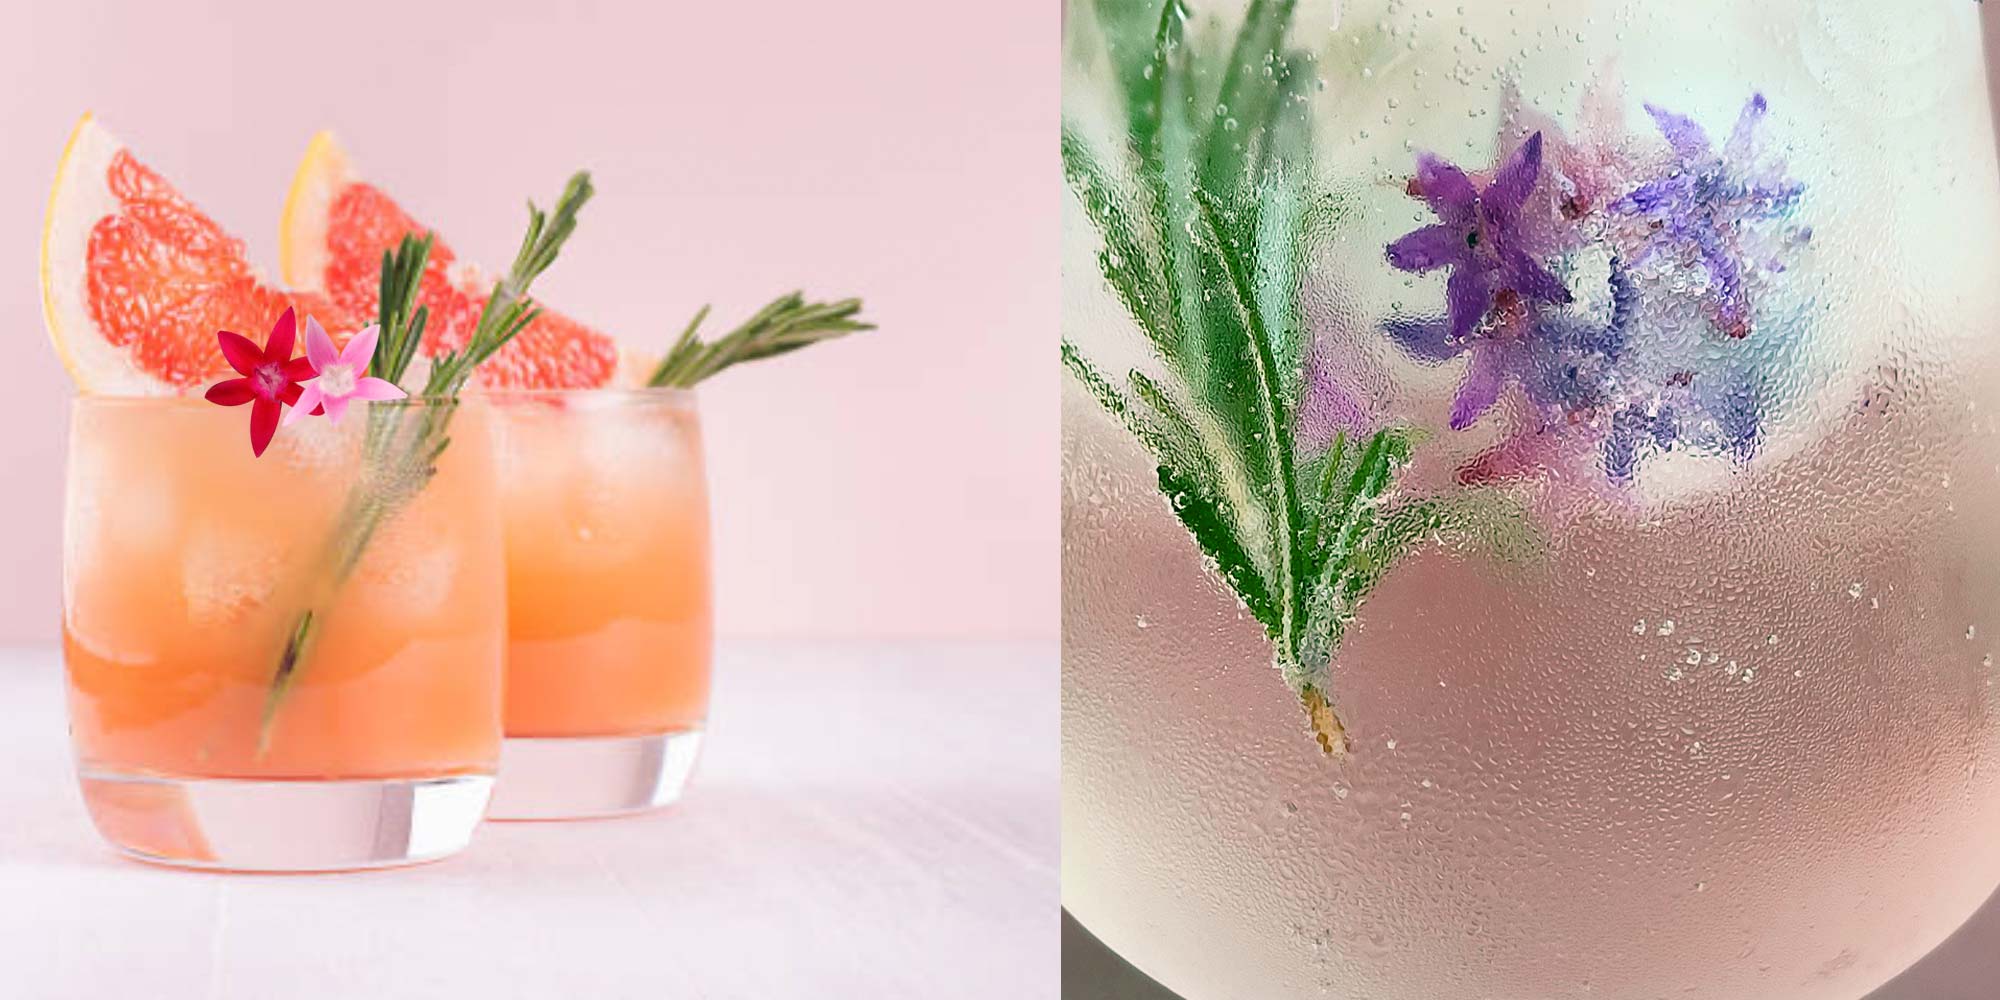 Peach Less : Cocktail à base de Romarin frais, Prosseco, Gin à la liqueur de pêche et fleurs de Pentas